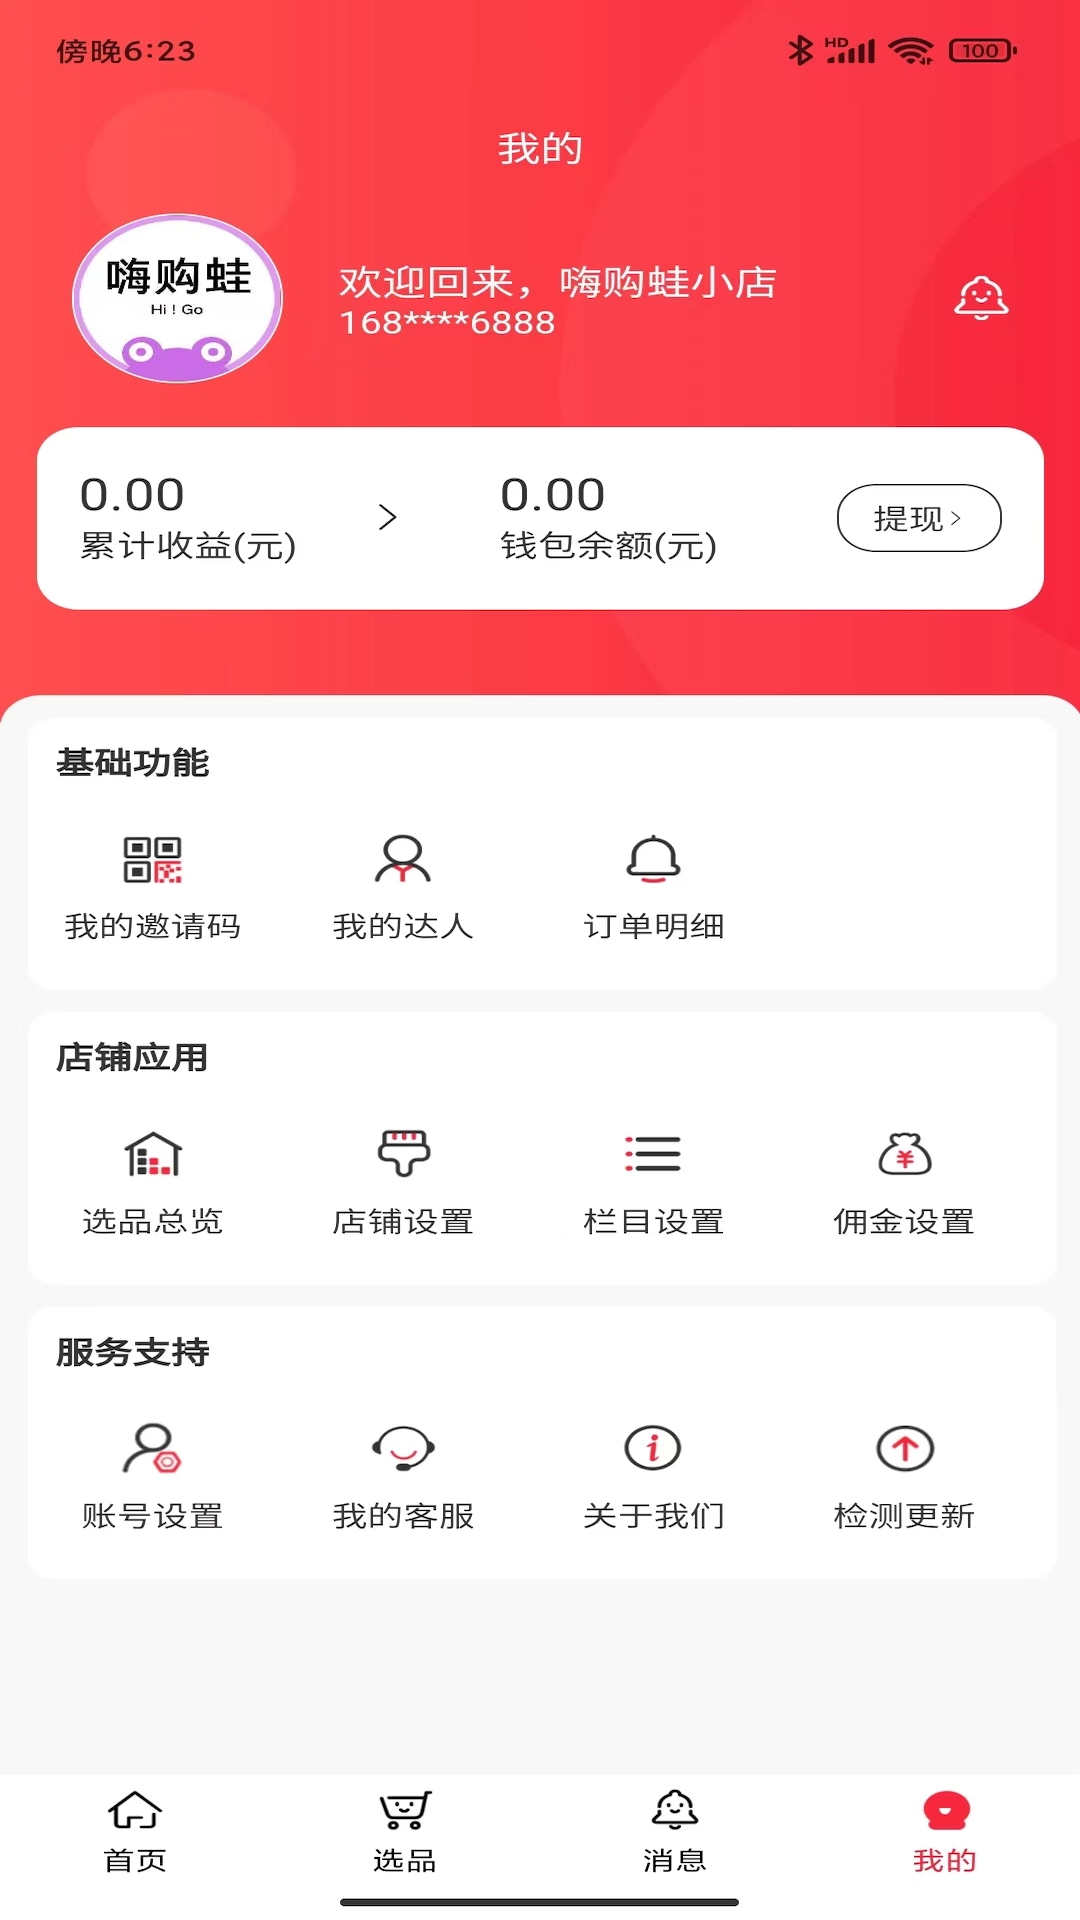 嗨购蛙商家版app官方下载 v1.0.0截图2